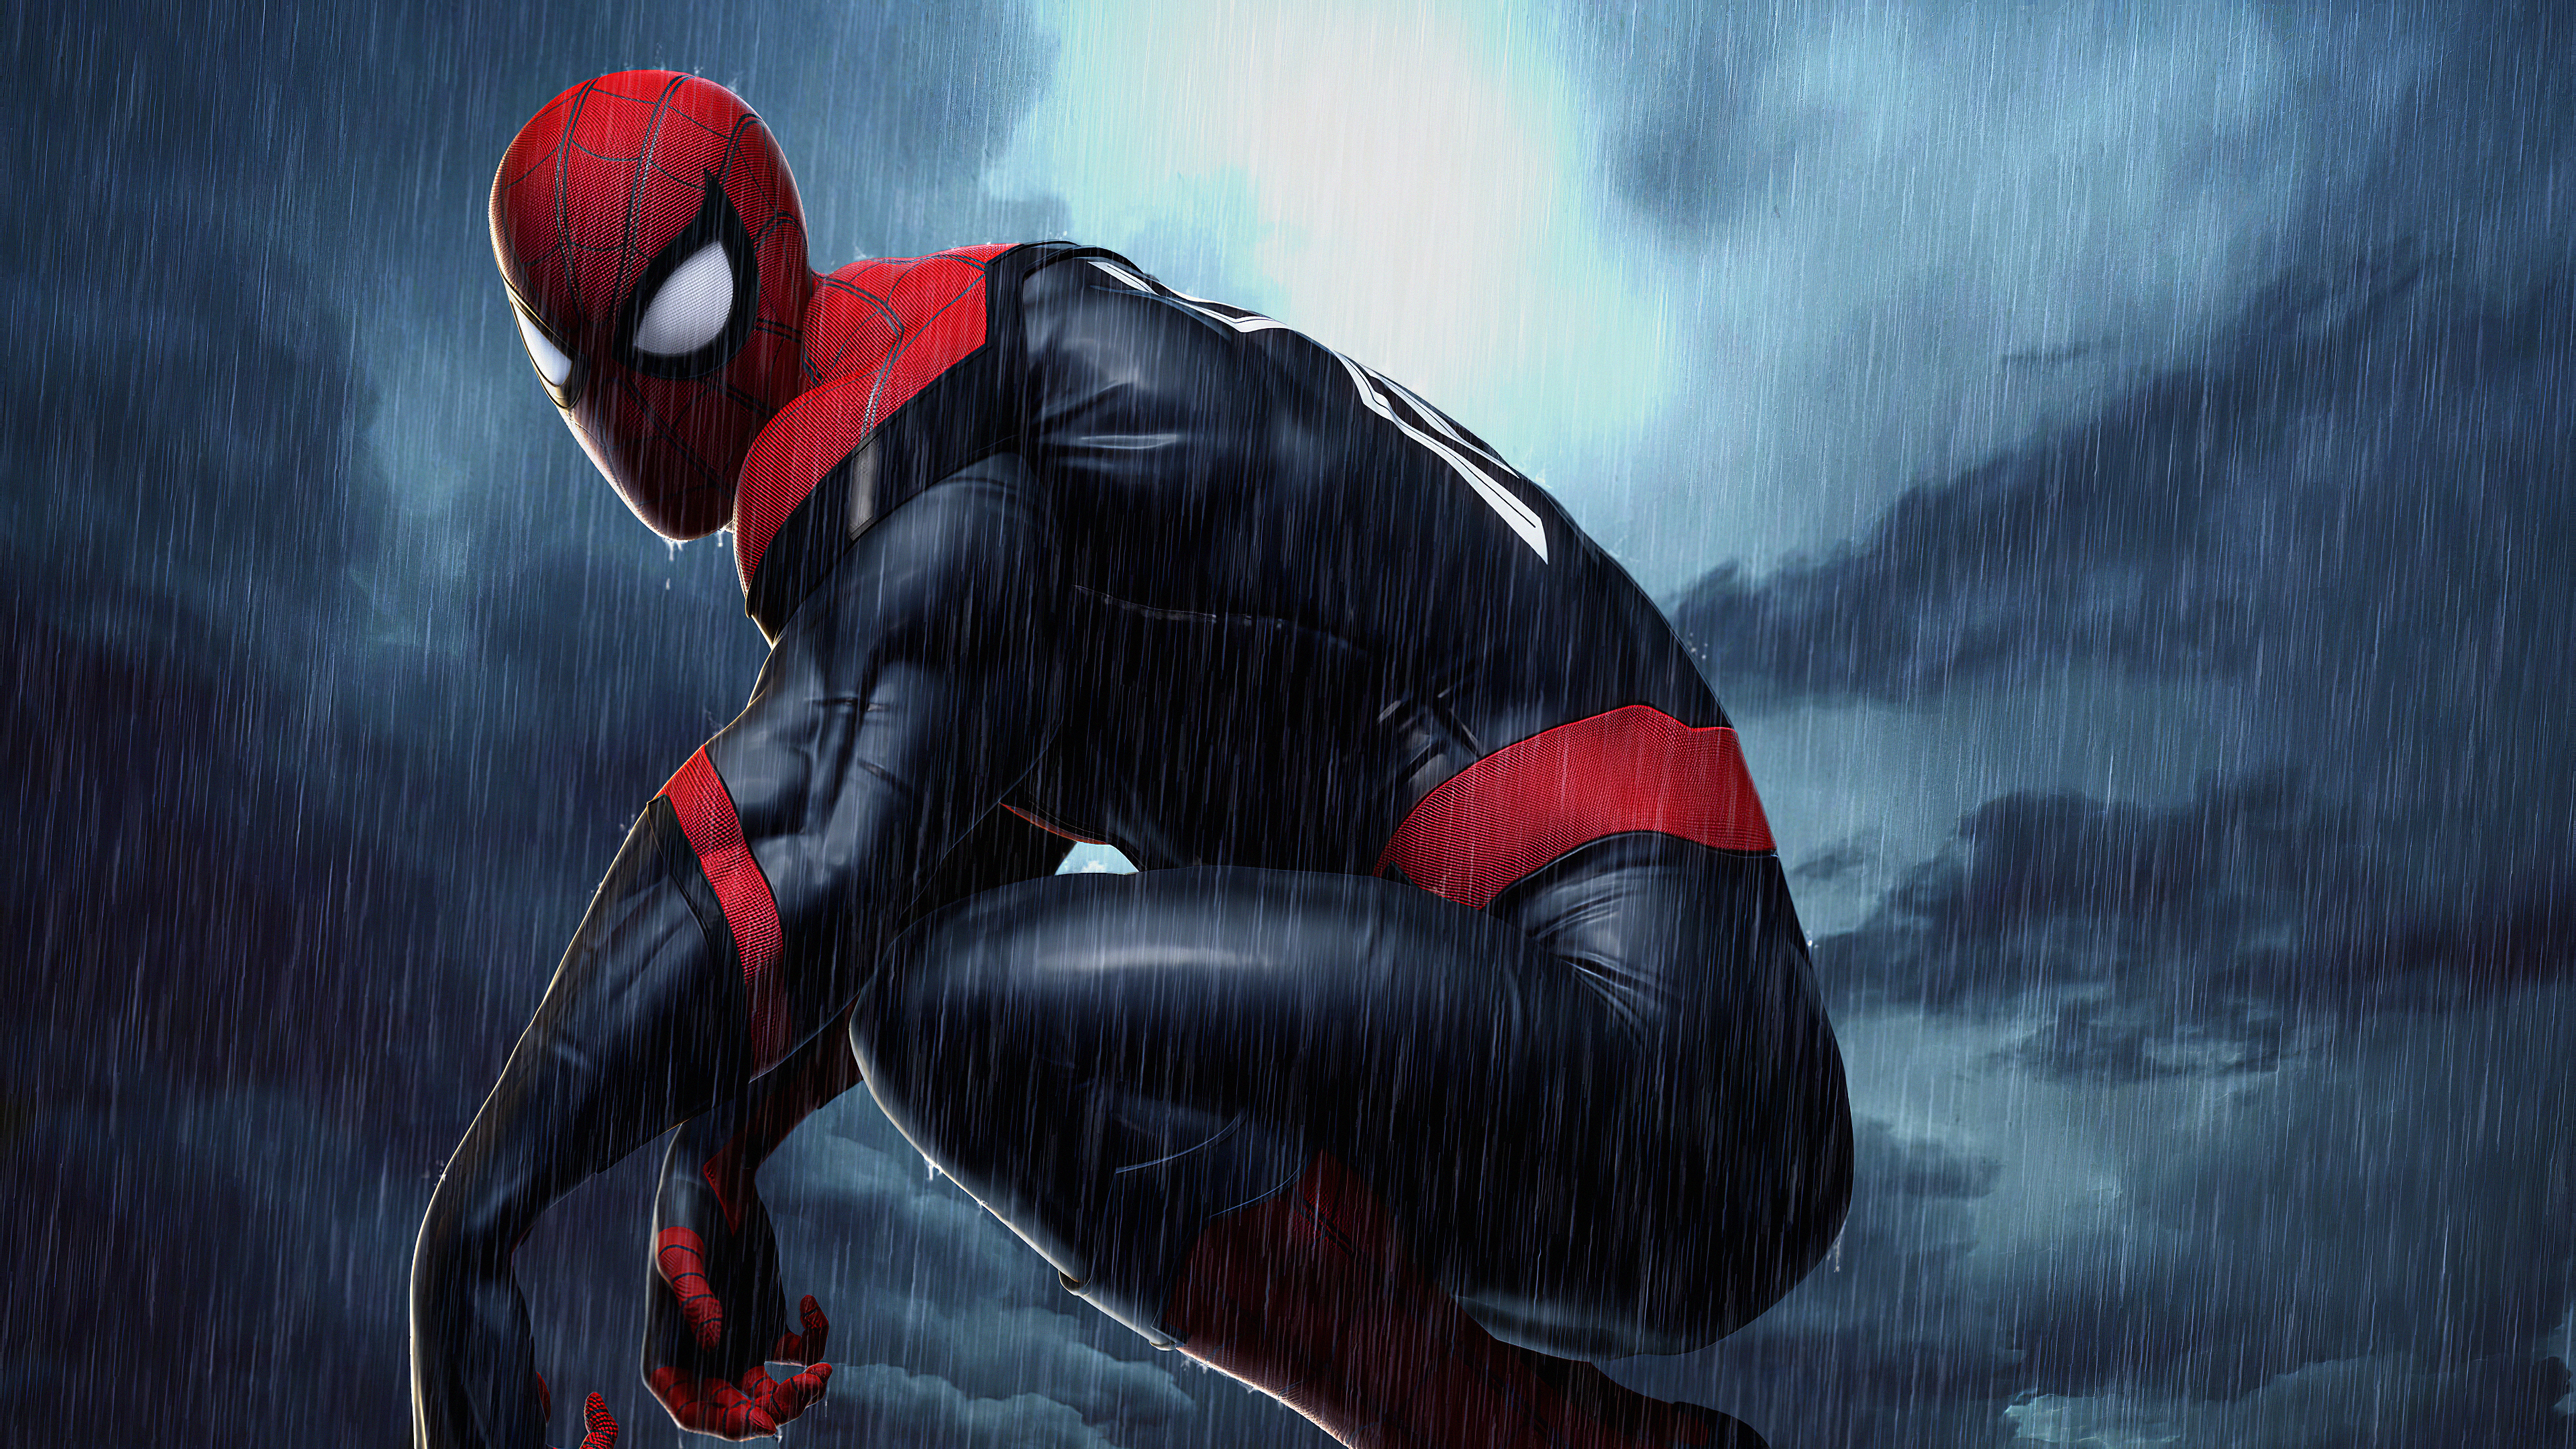 Spiderman 4k Raining, HD Superheroes, 4k Wallpapers, Images